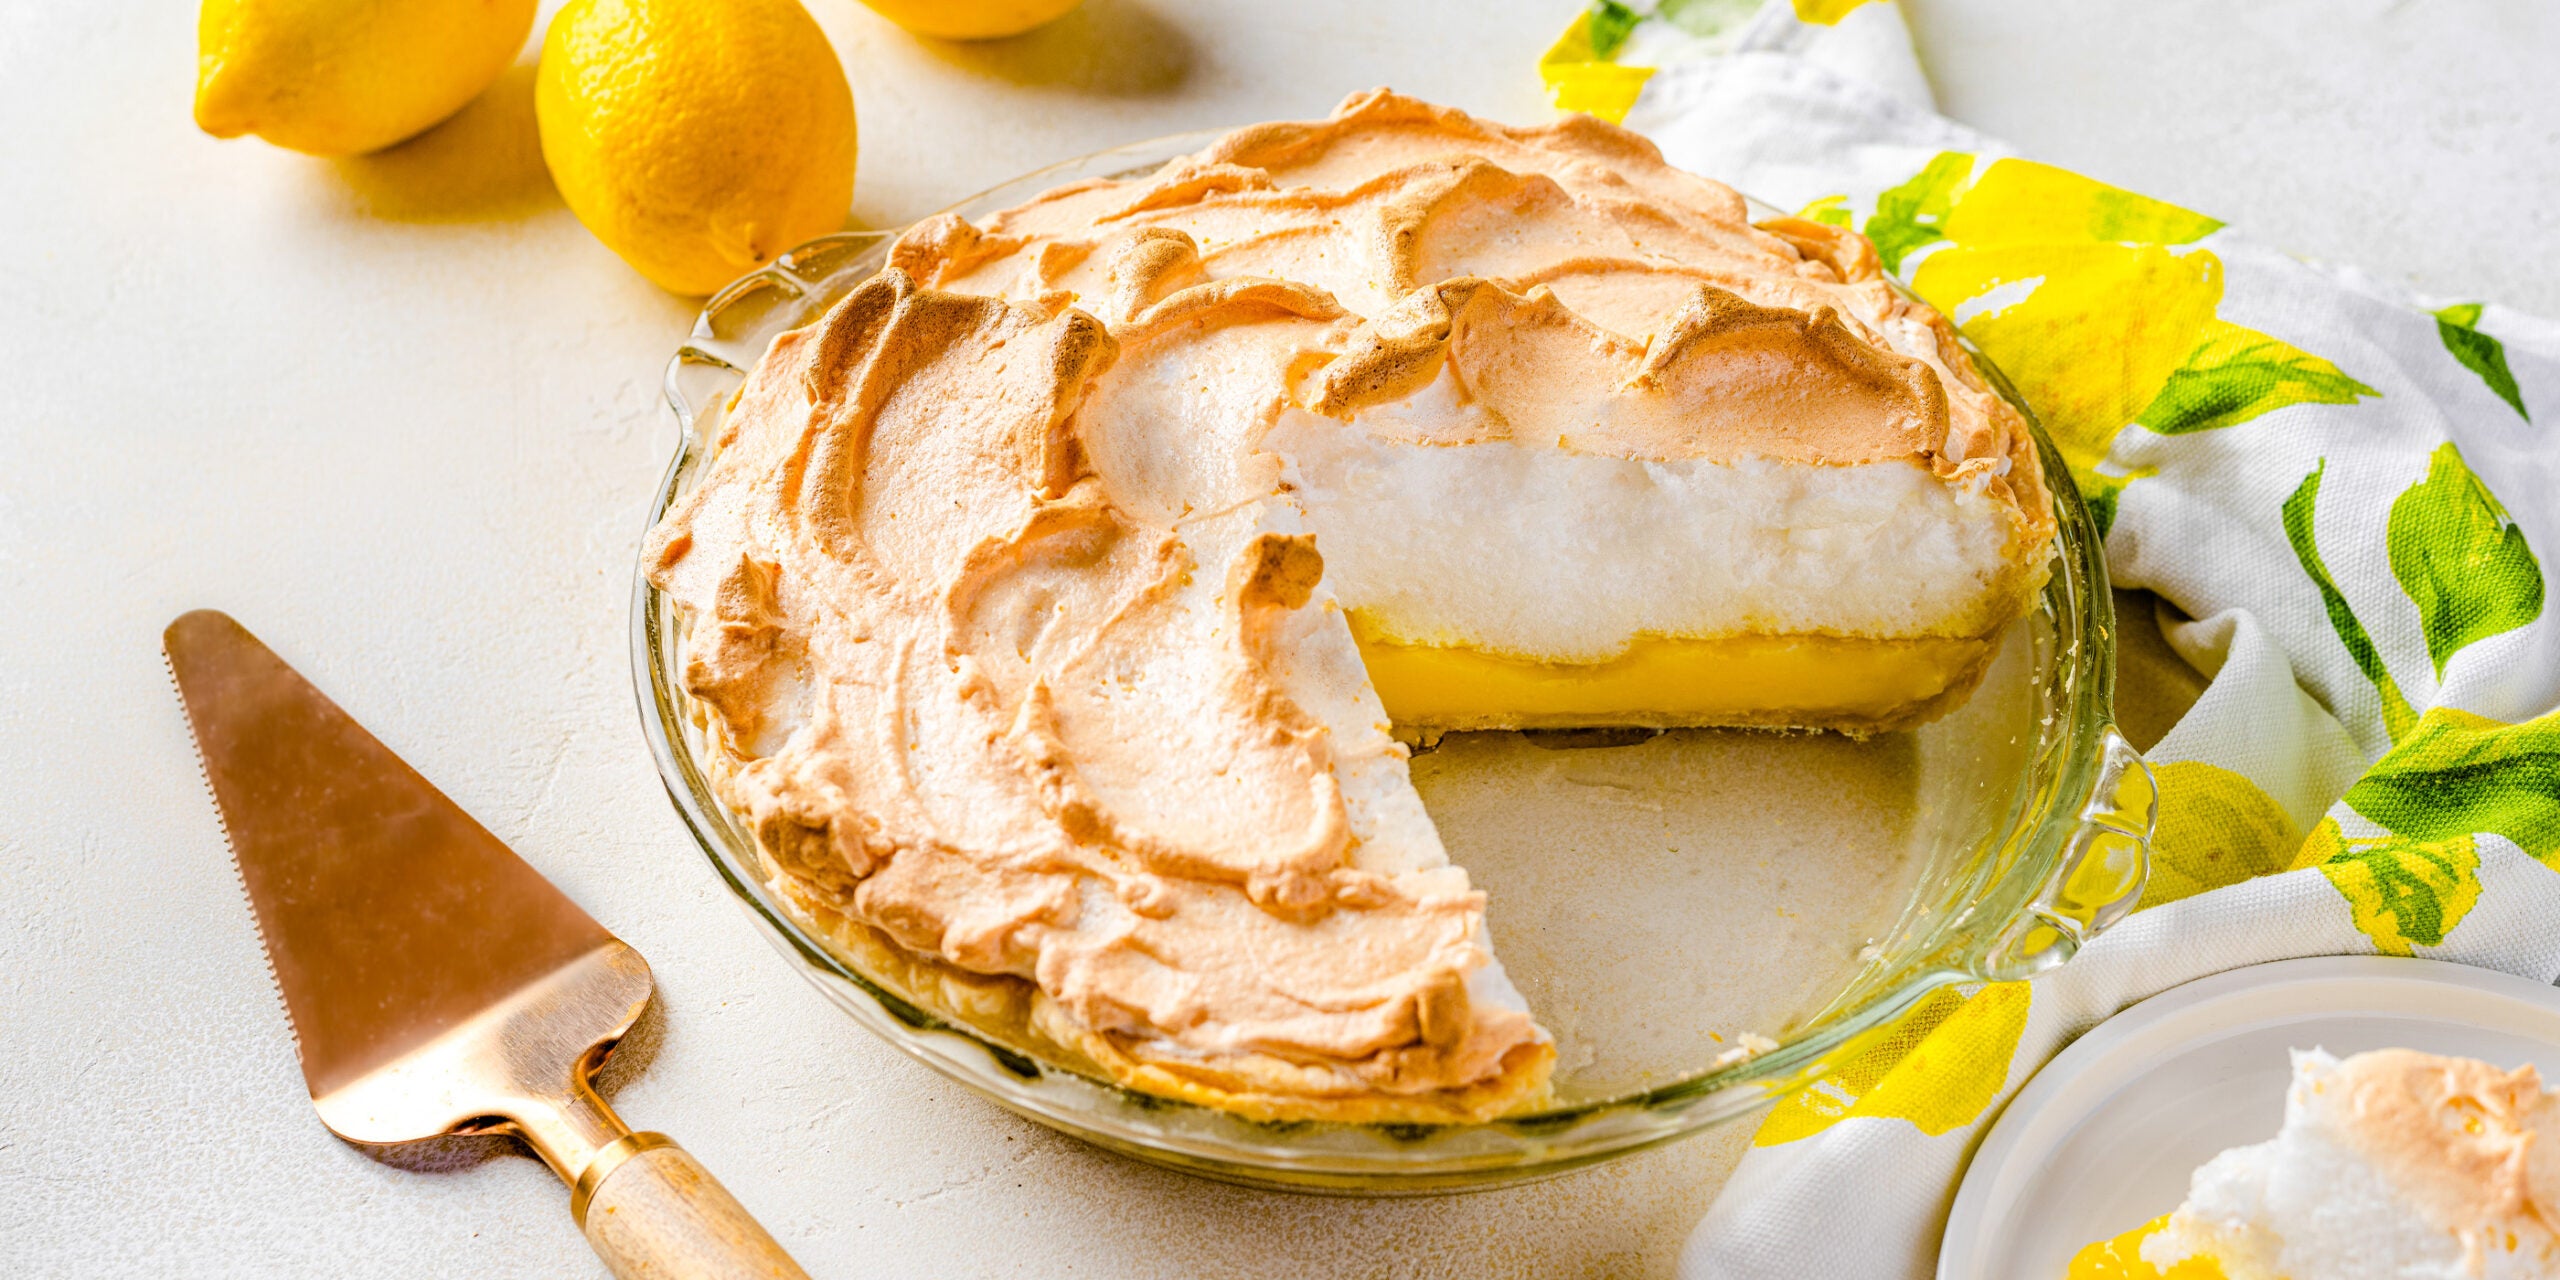 https://www.splenda.com/wp-content/uploads/2020/05/lemon-meringue-pie-scaled.jpg